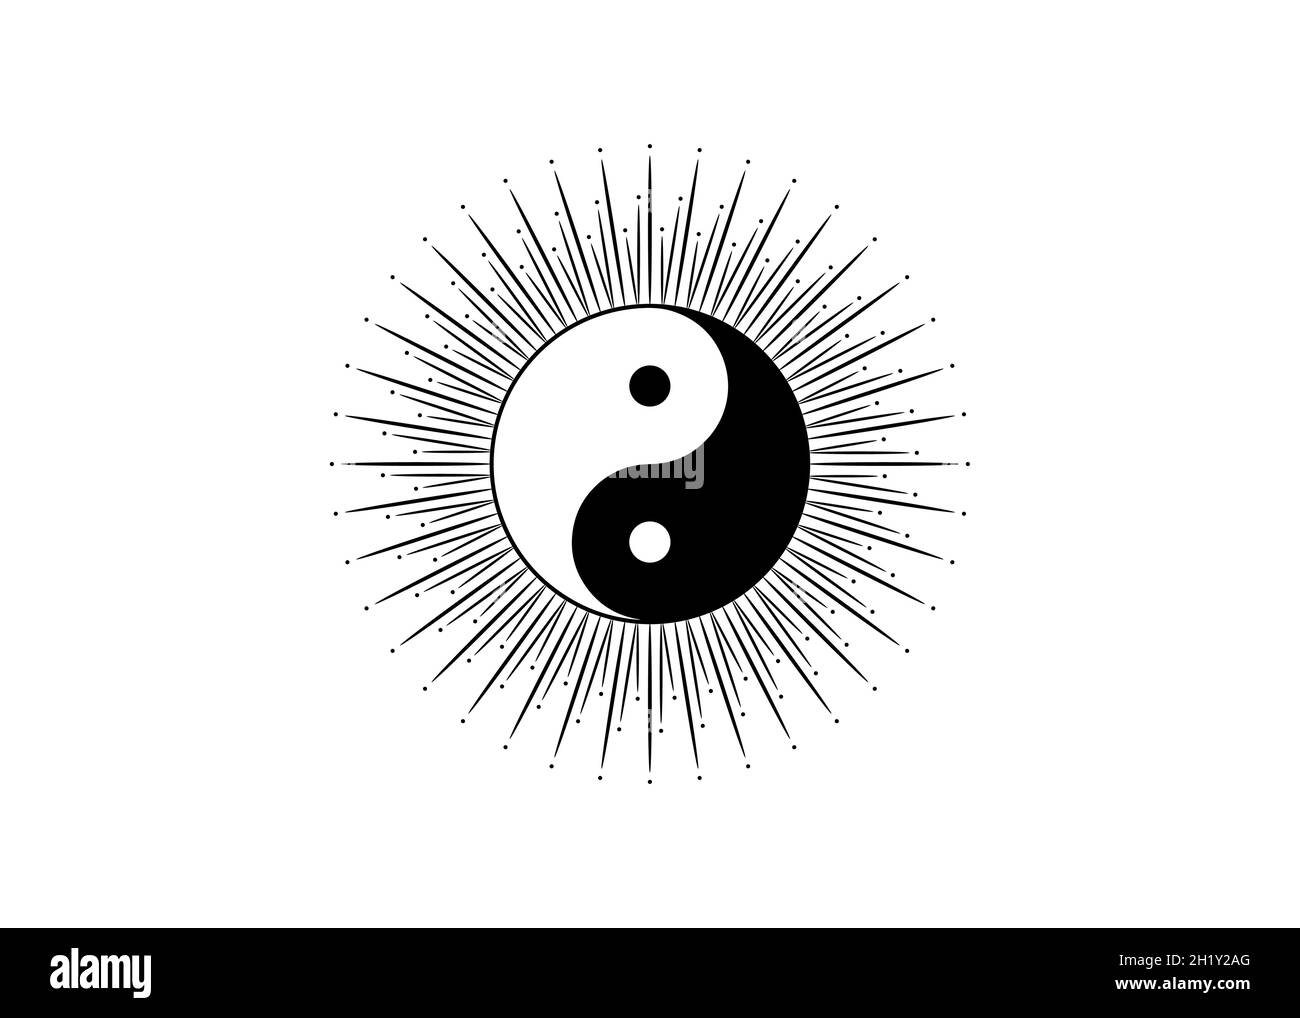 Ying Yang symbole de l'harmonie et de l'équilibre, la phylosophie chinoise décrit comment les forces opposées et contraires peuvent être complémentaires, interconnectées Illustration de Vecteur